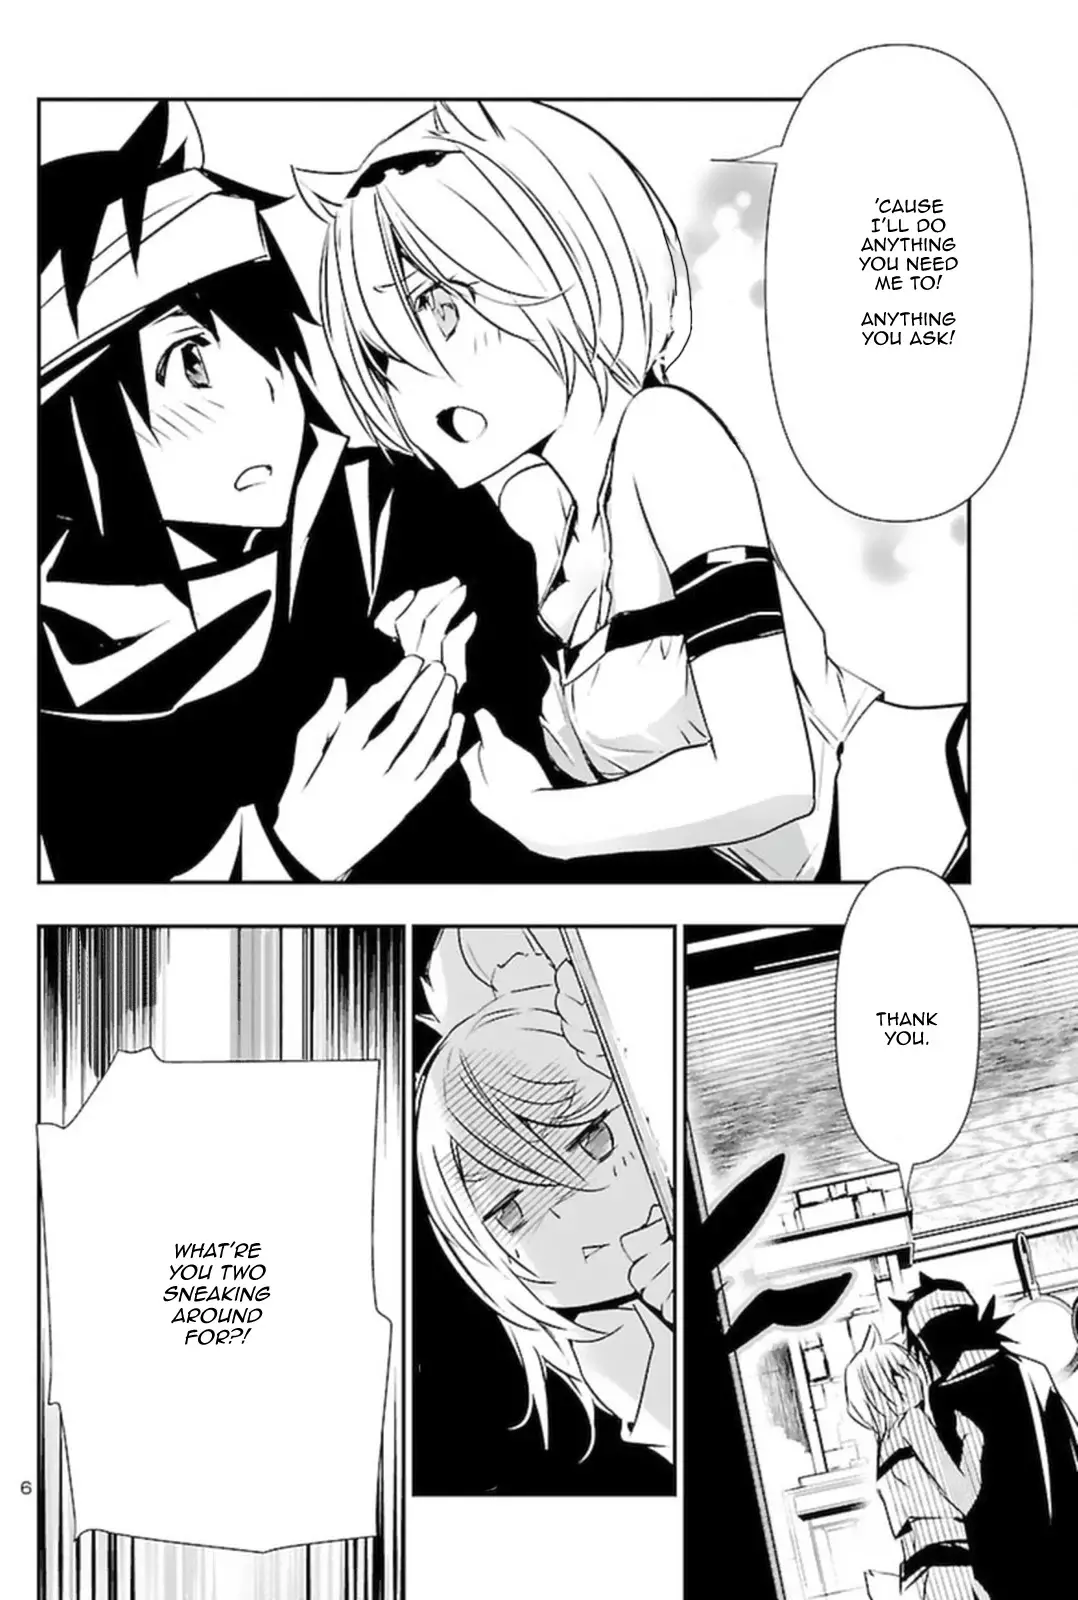 Shinju no Nectar - 57 page 6